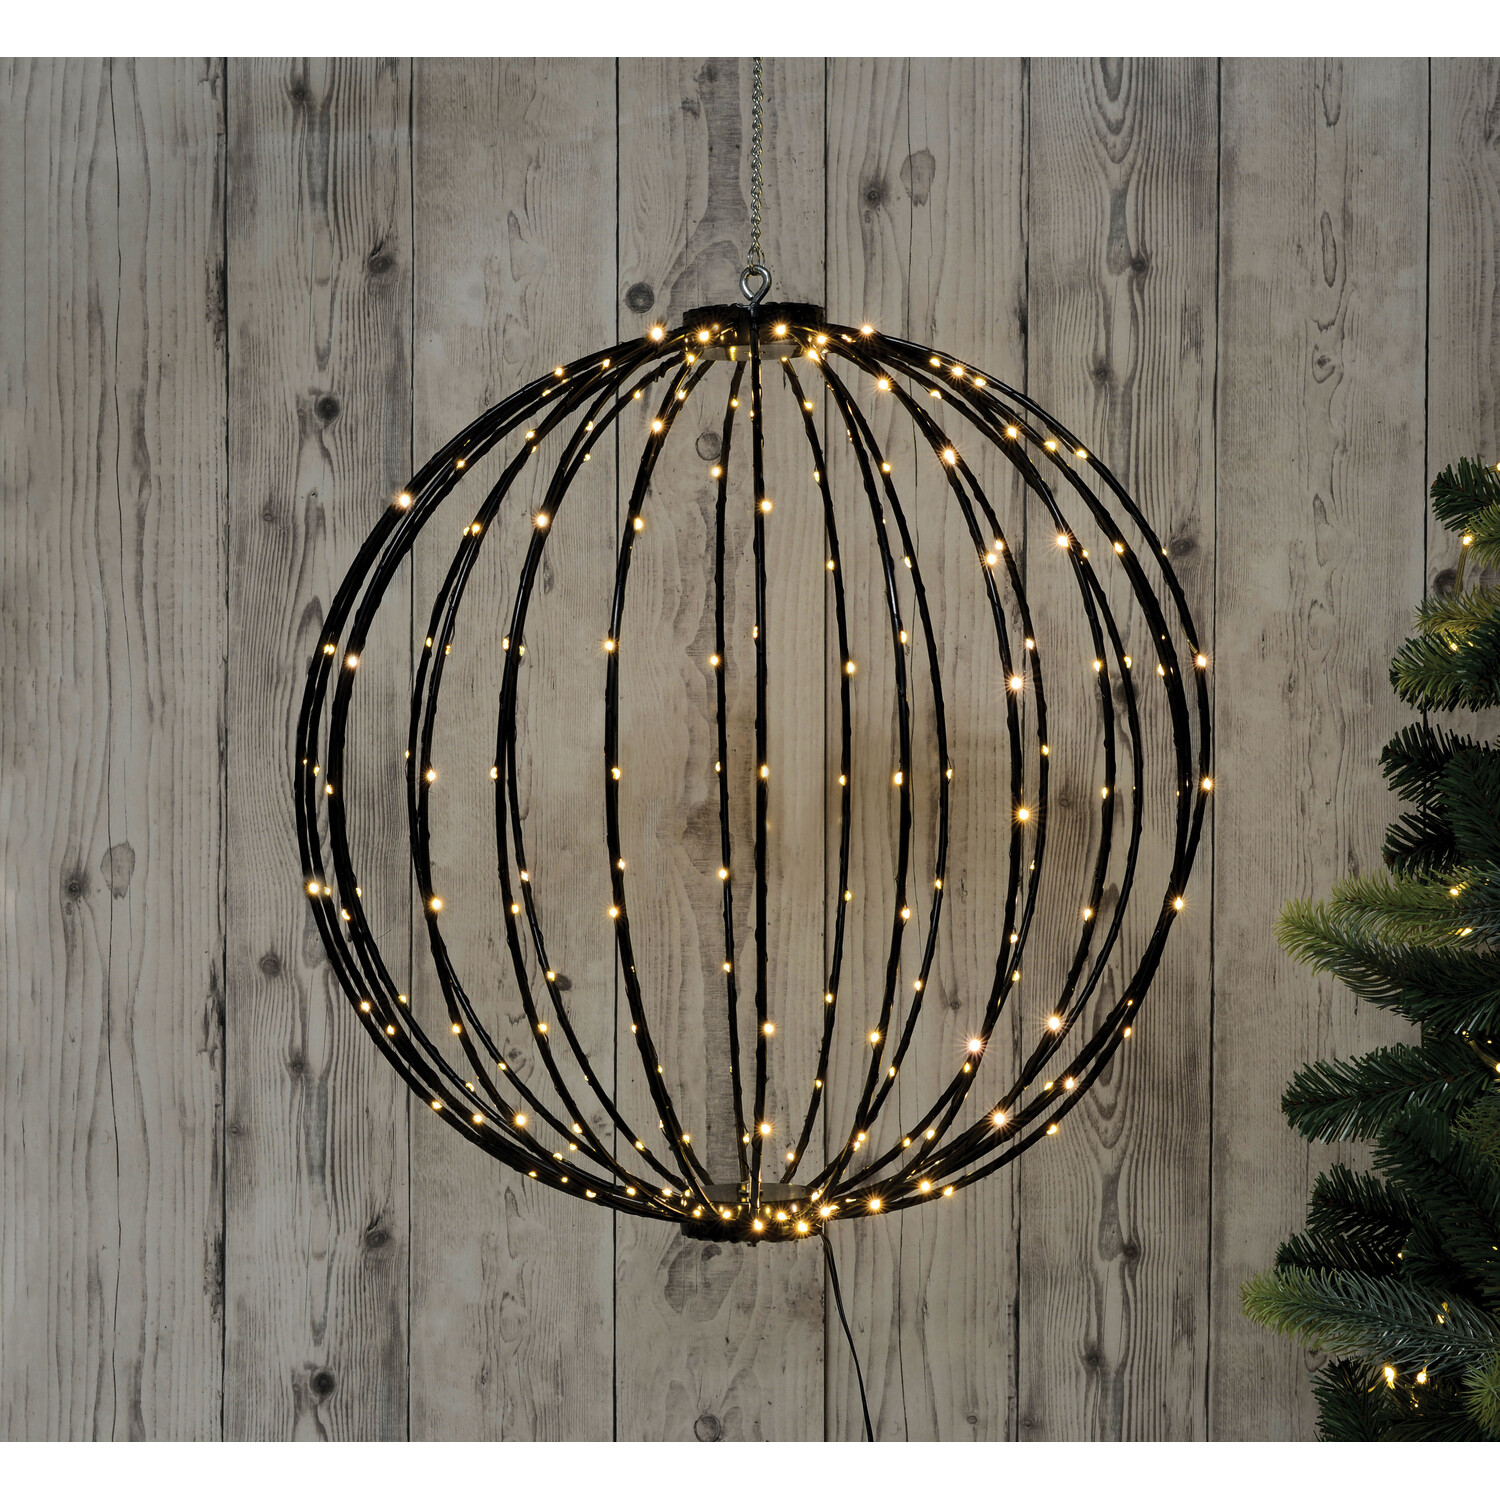 LED Christmas Light Ball - Black Image 1